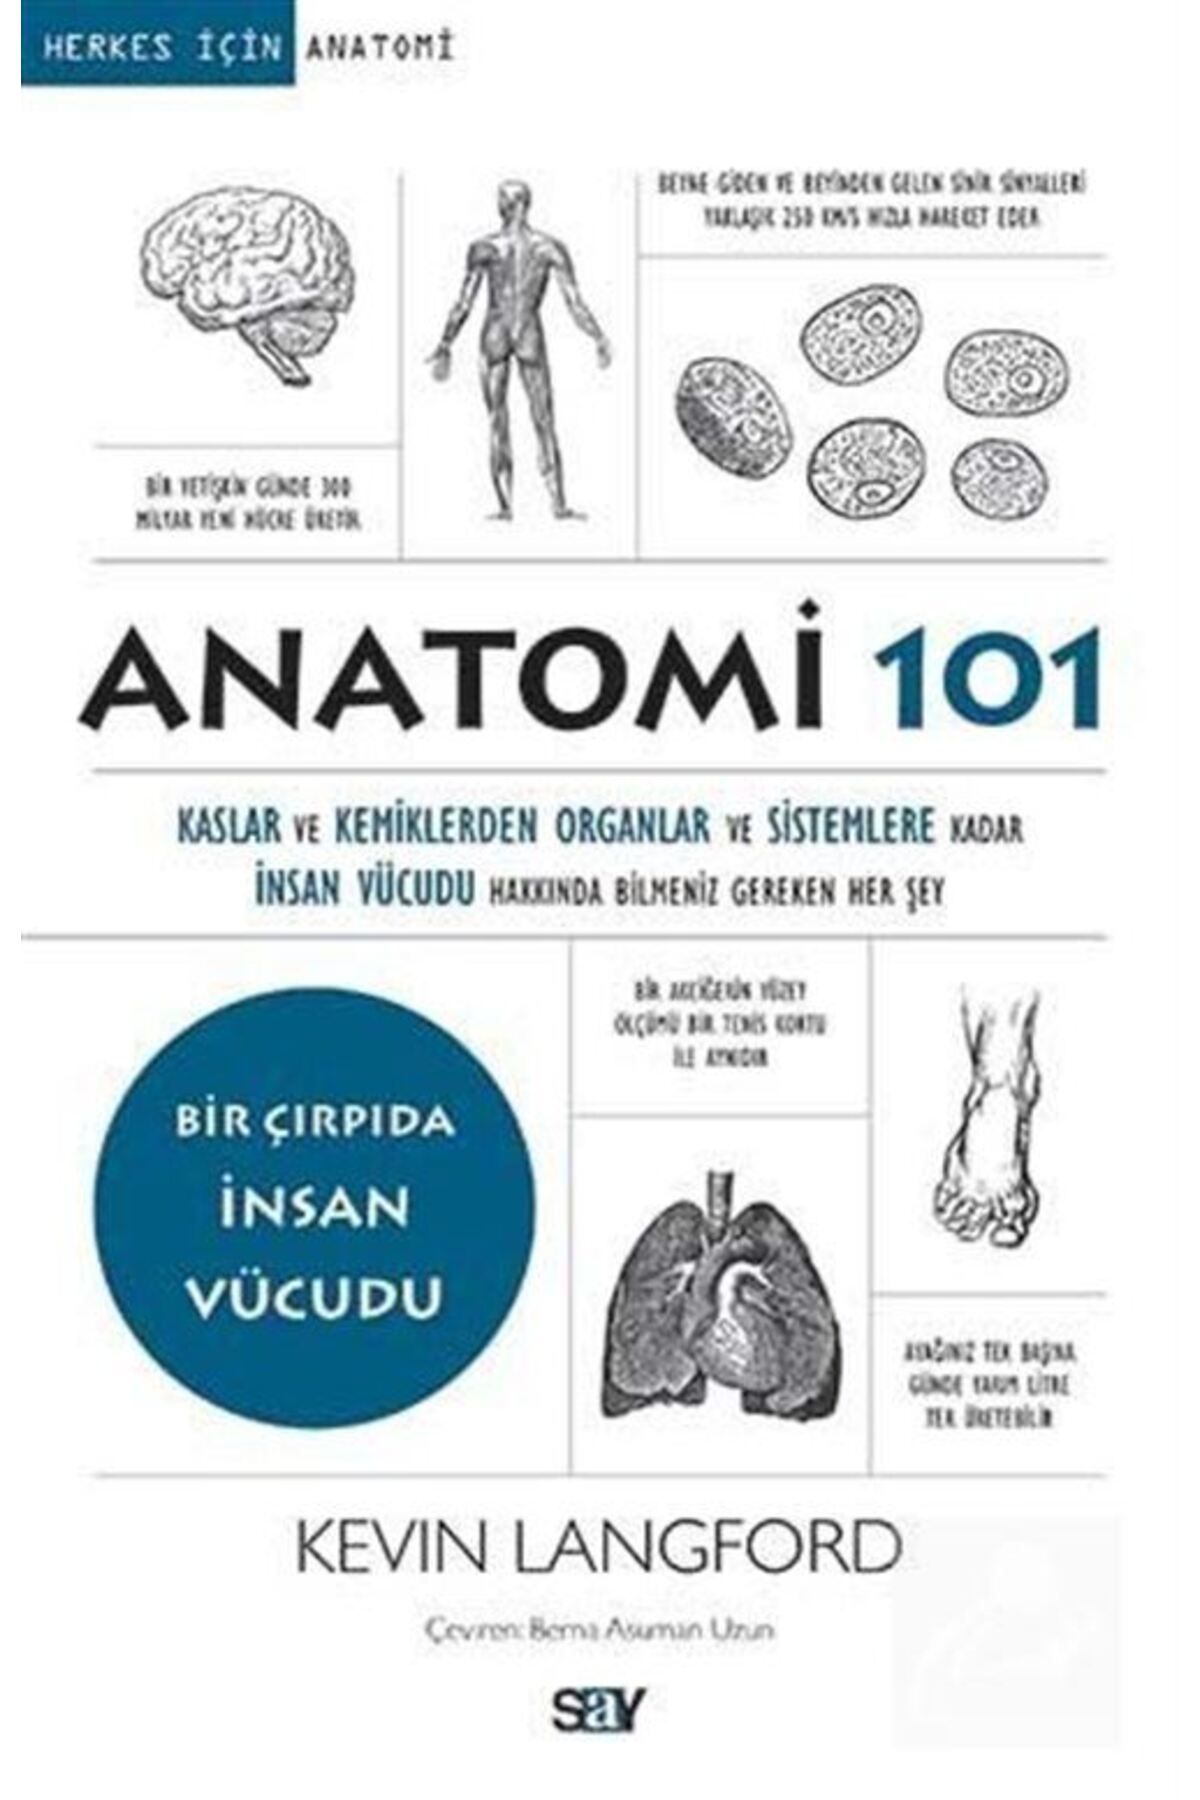 Say Yayınları Anatomi 101